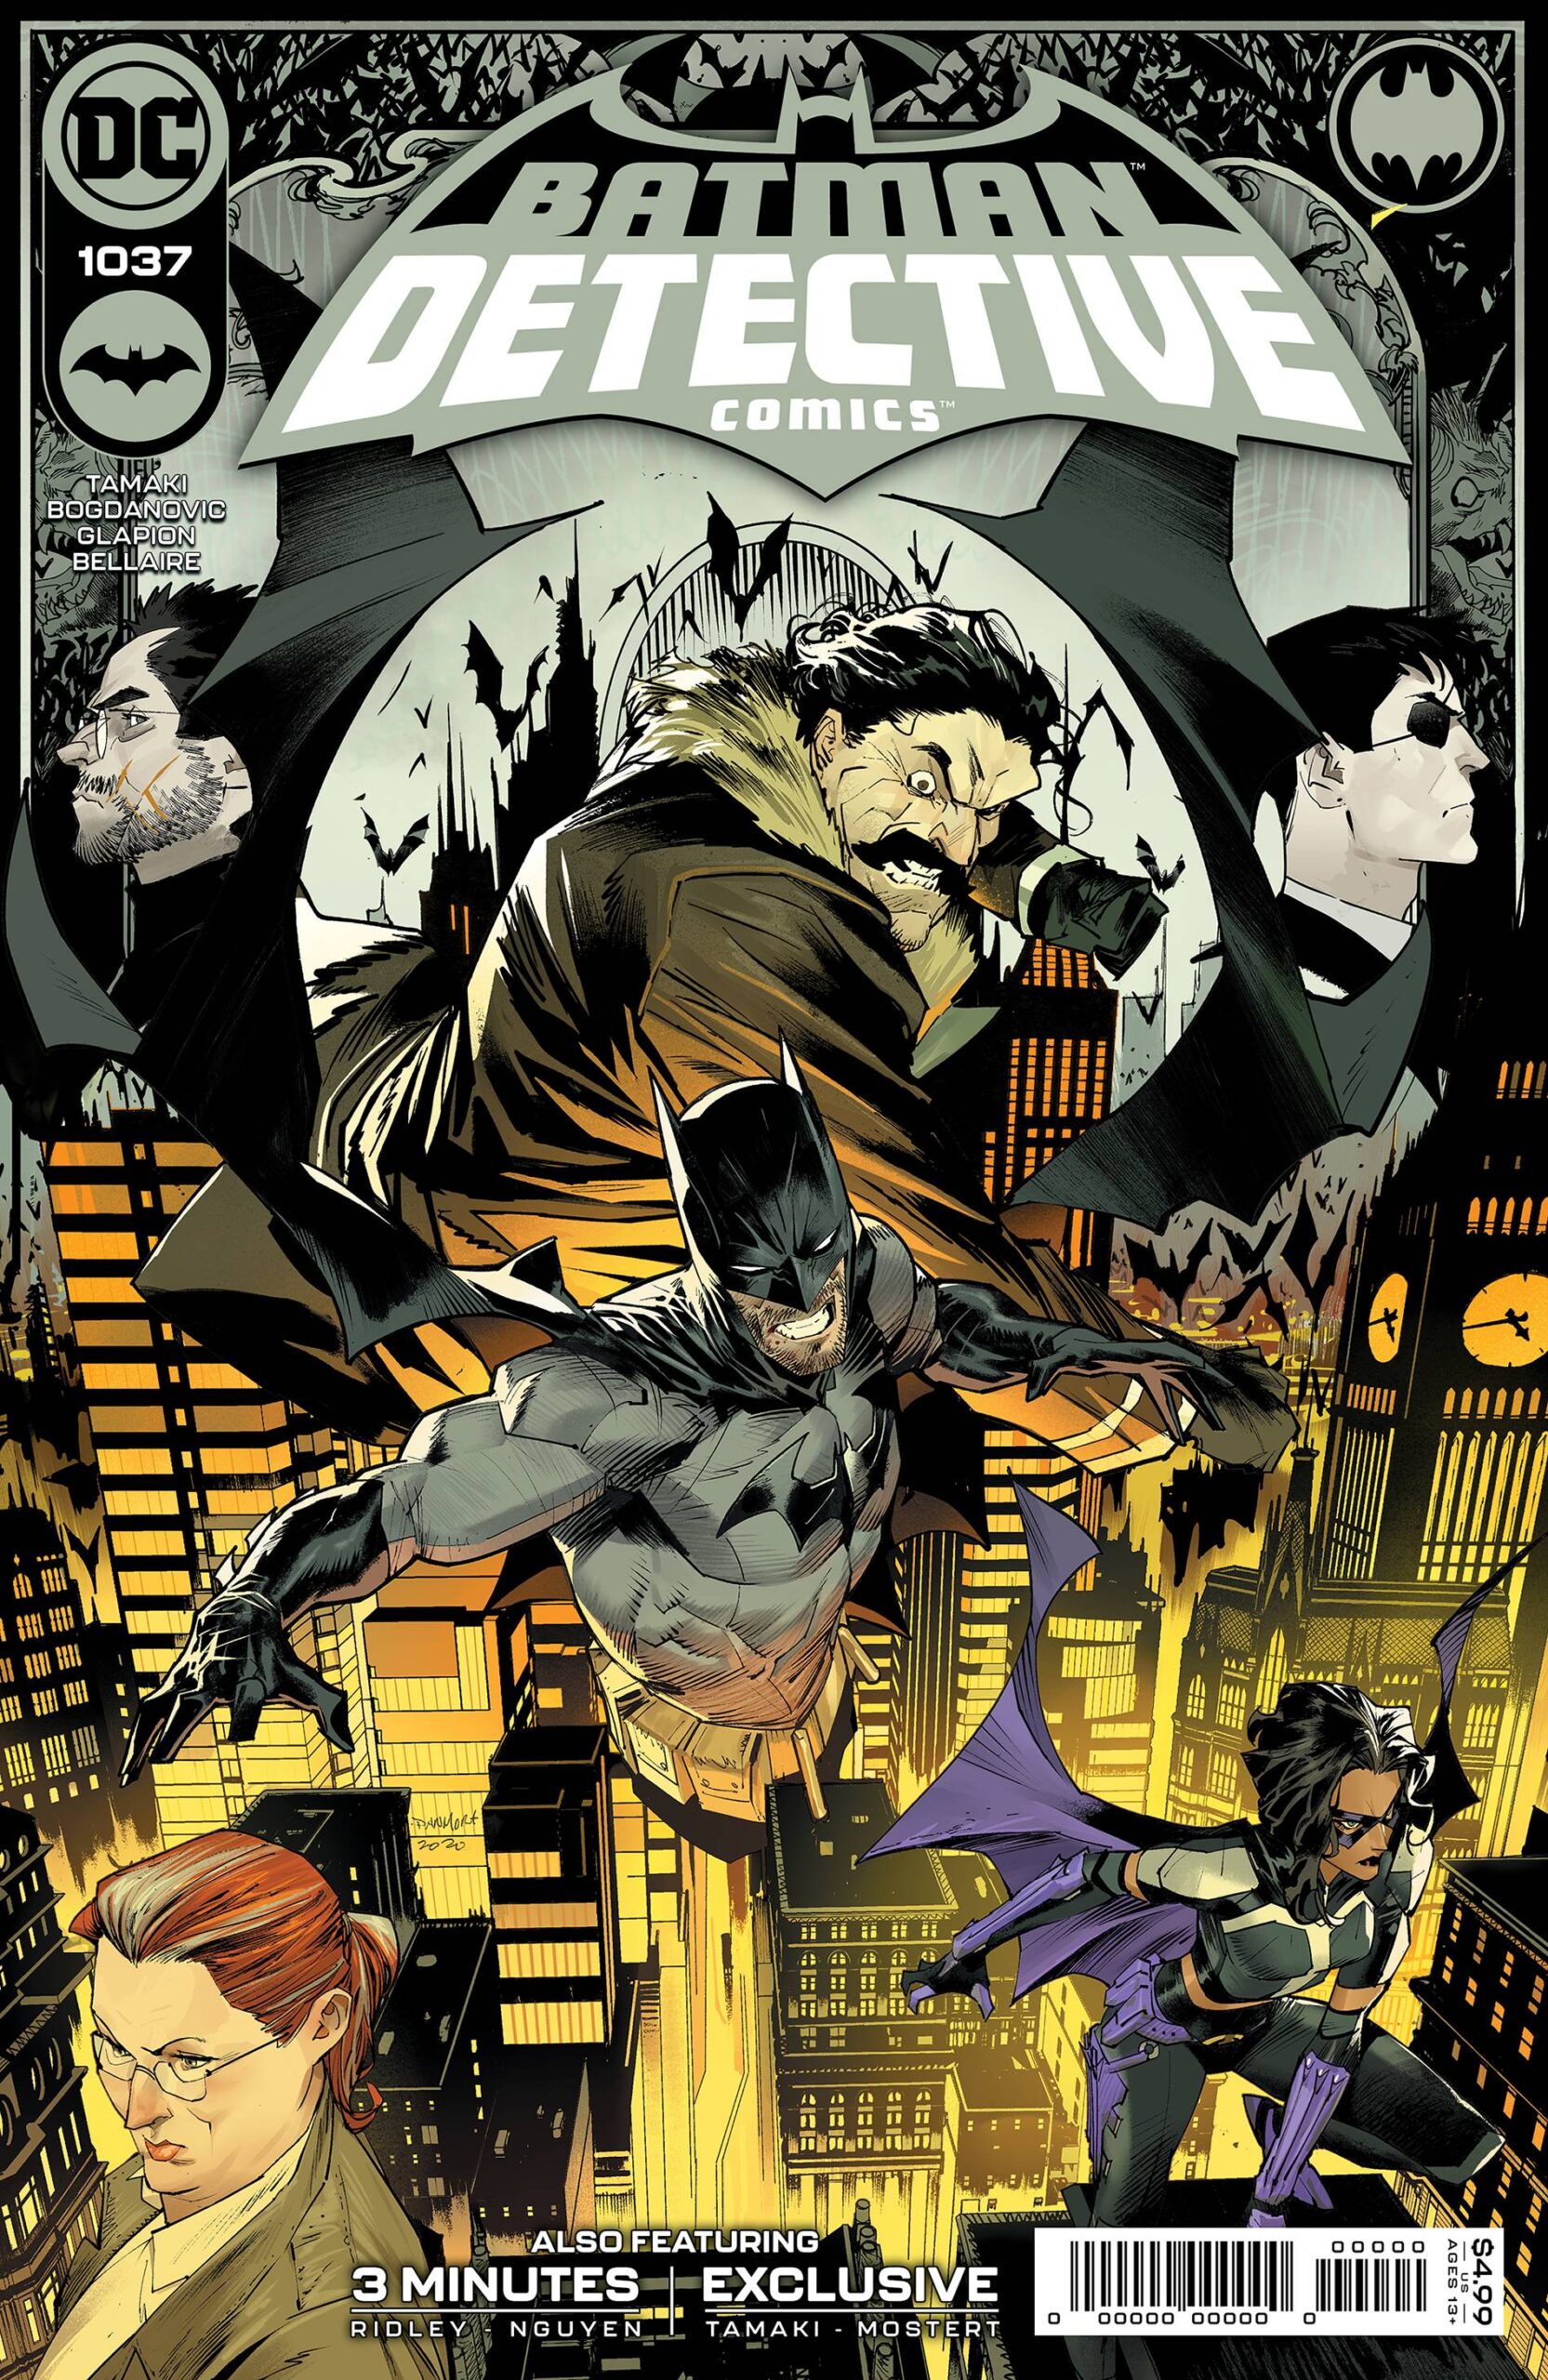 Detective Comics #1037